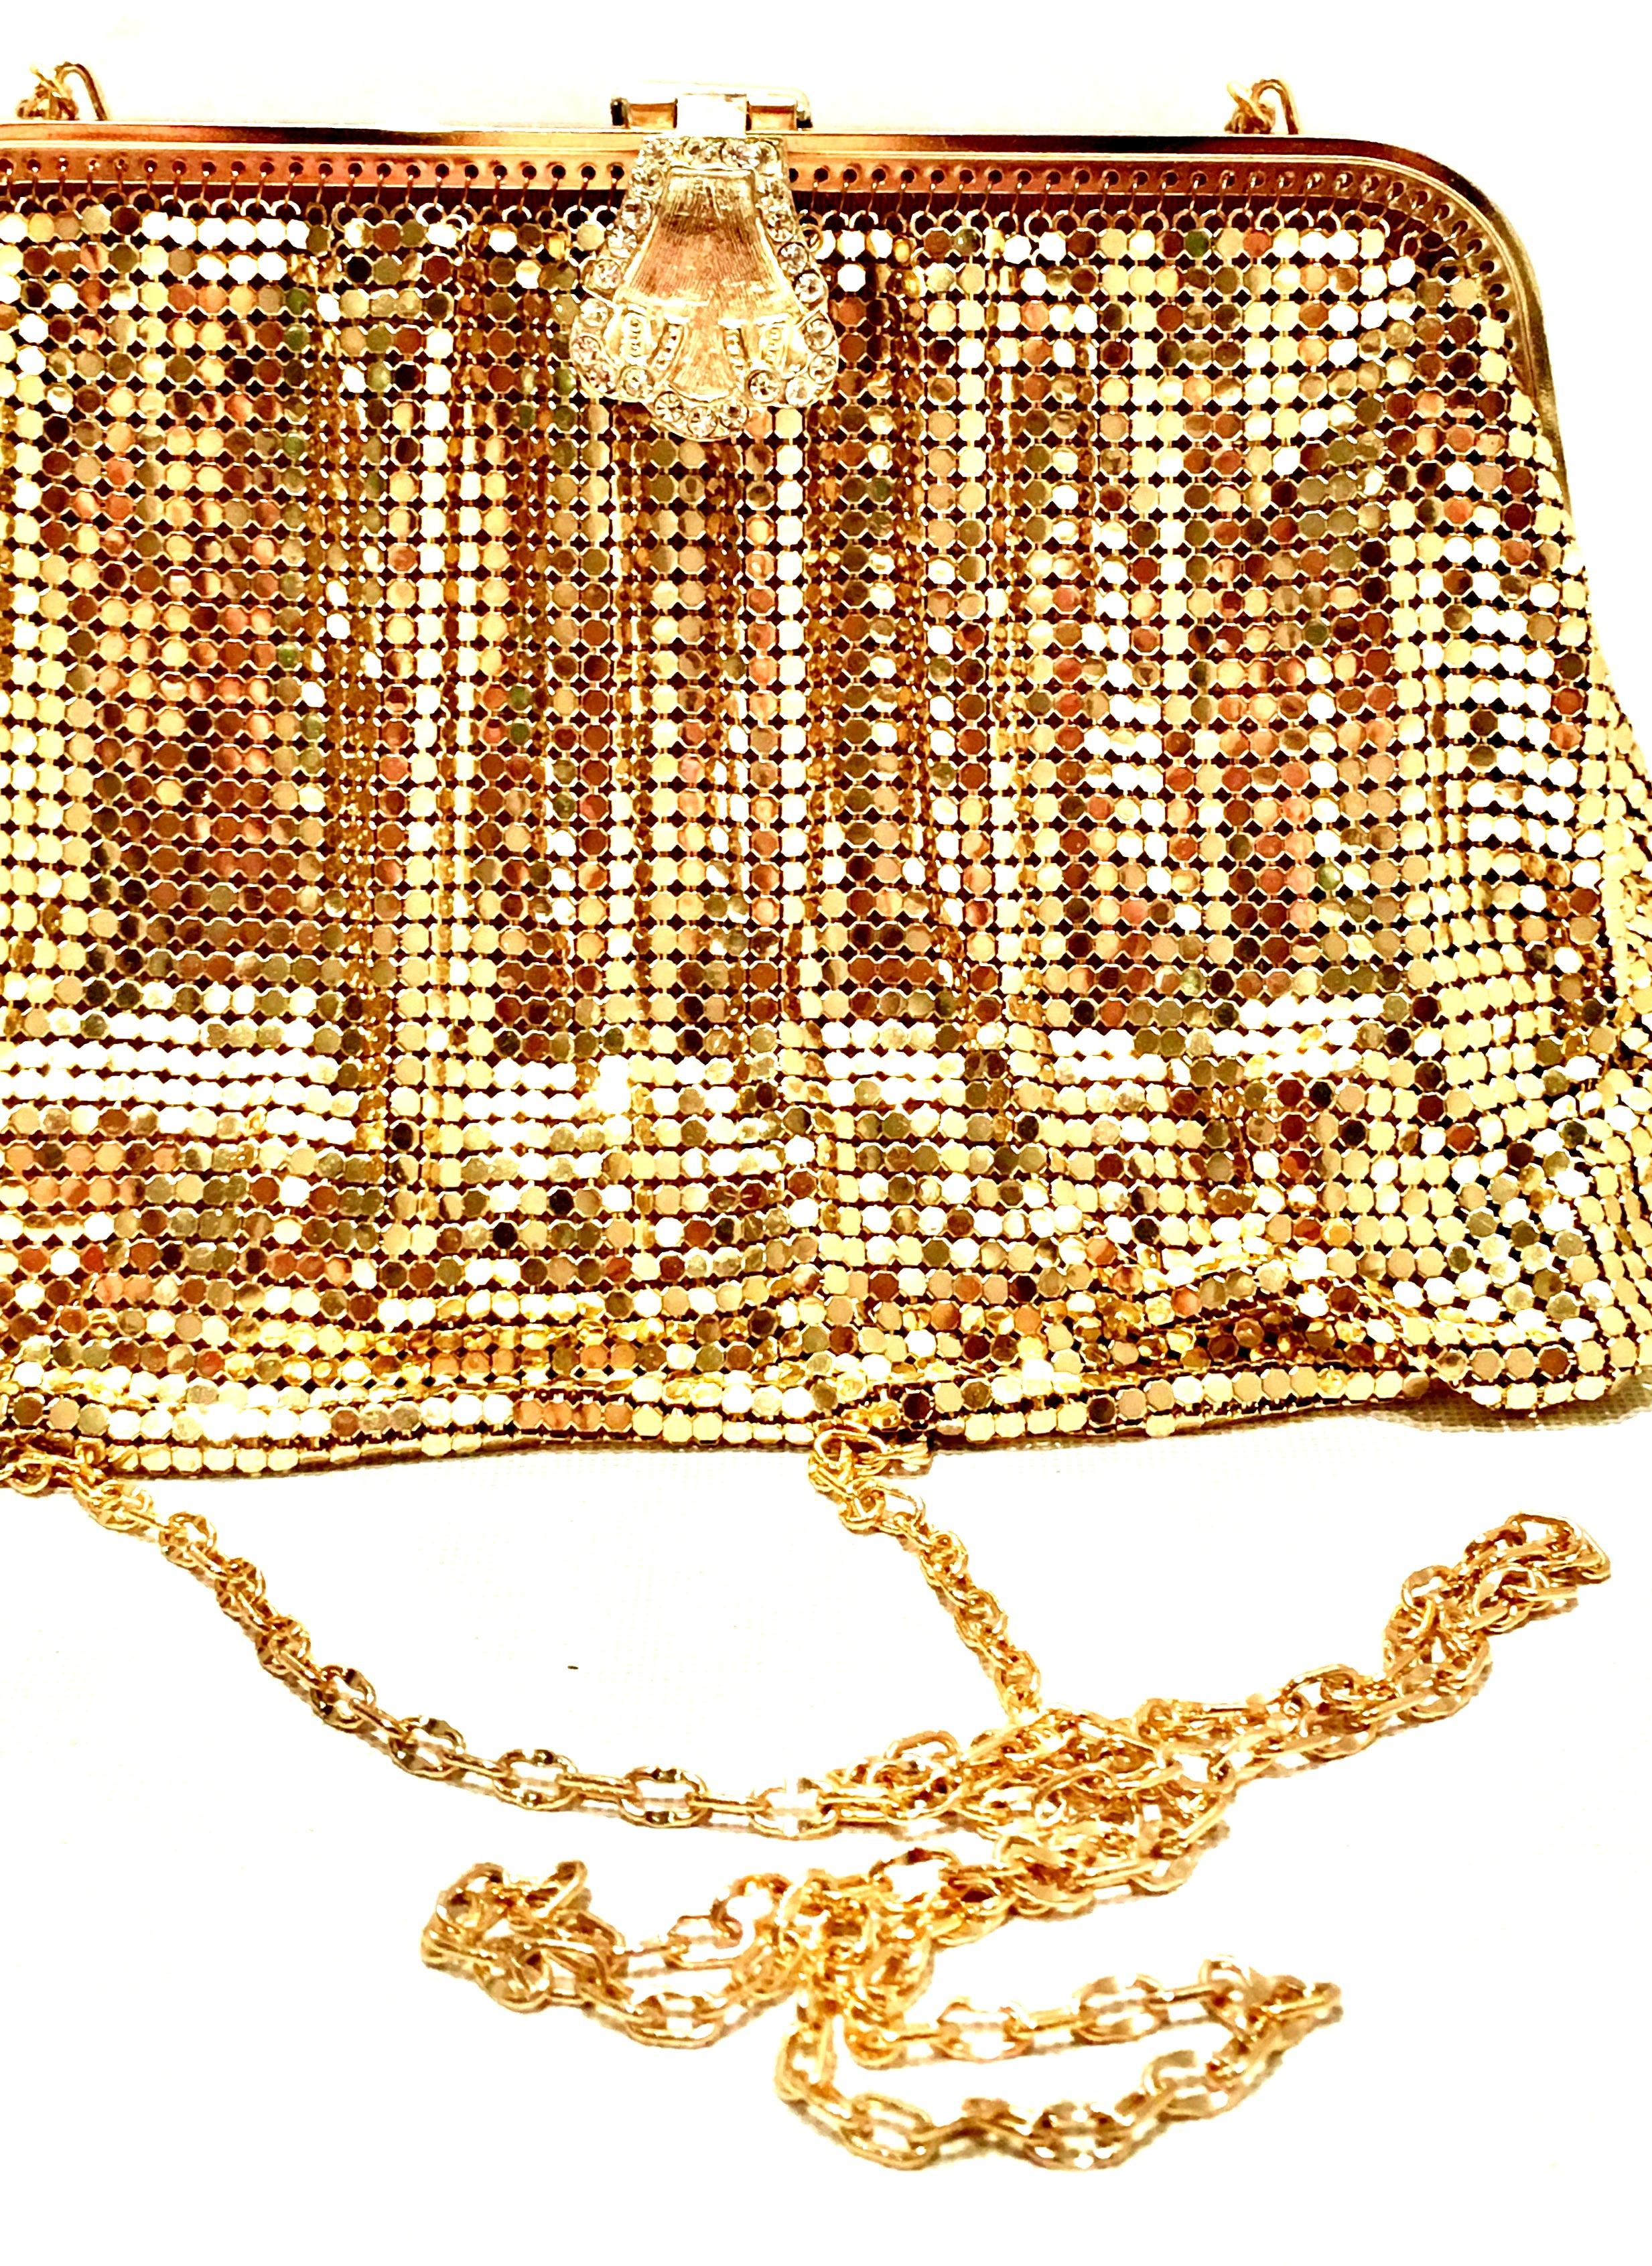 20th Century Gold Metal Mesh & Swarovksi Crystal Evening Bag By, Whiting & Davis 1